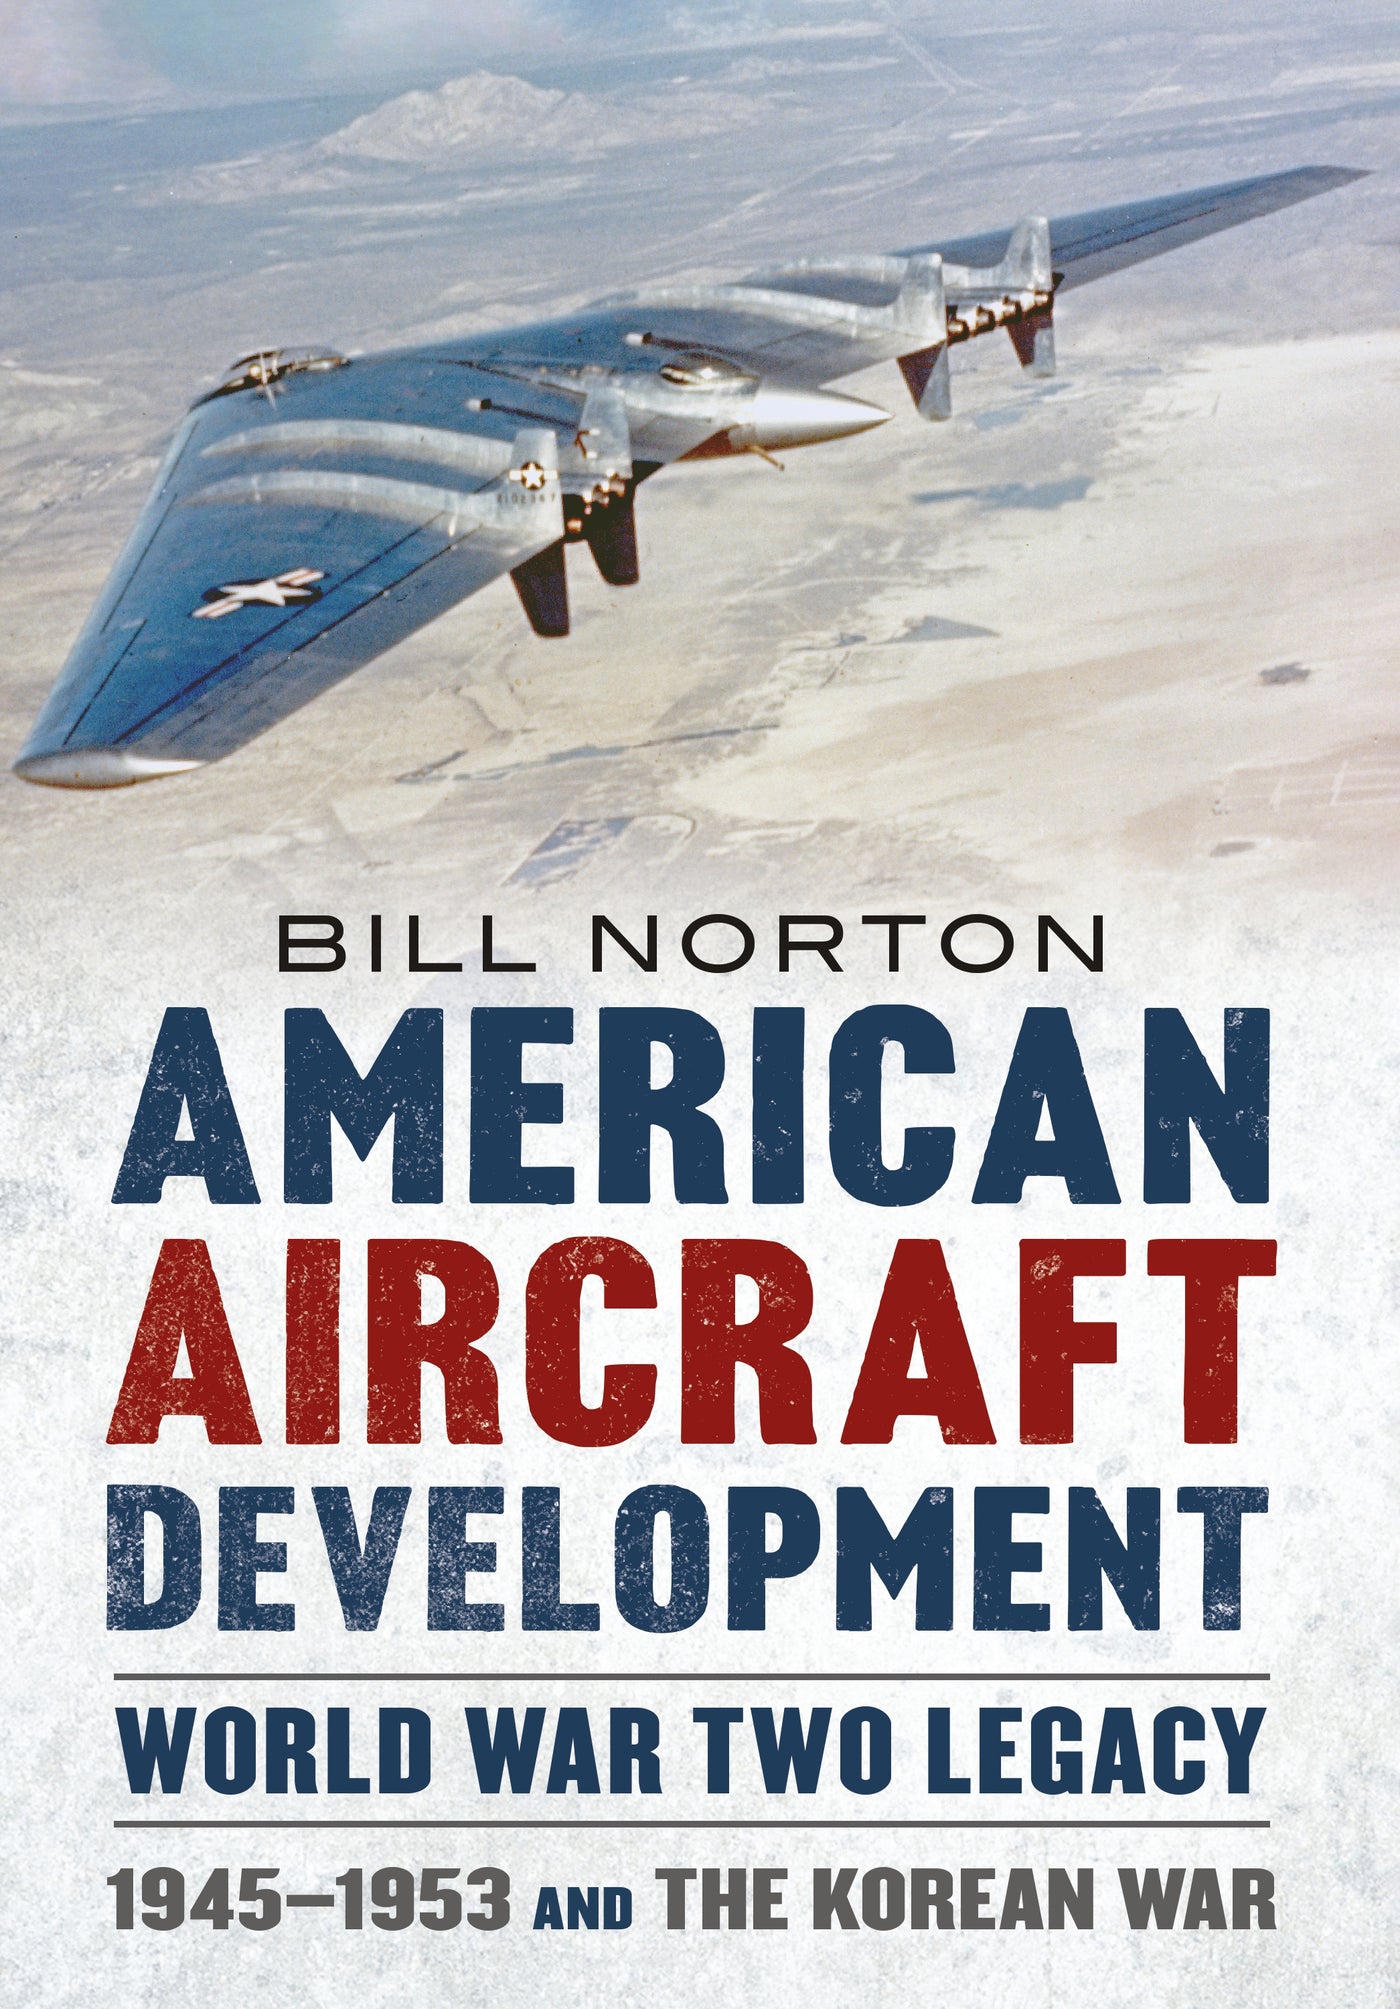 Vermächtnis der amerikanischen Flugzeugentwicklung im Zweiten Weltkrieg